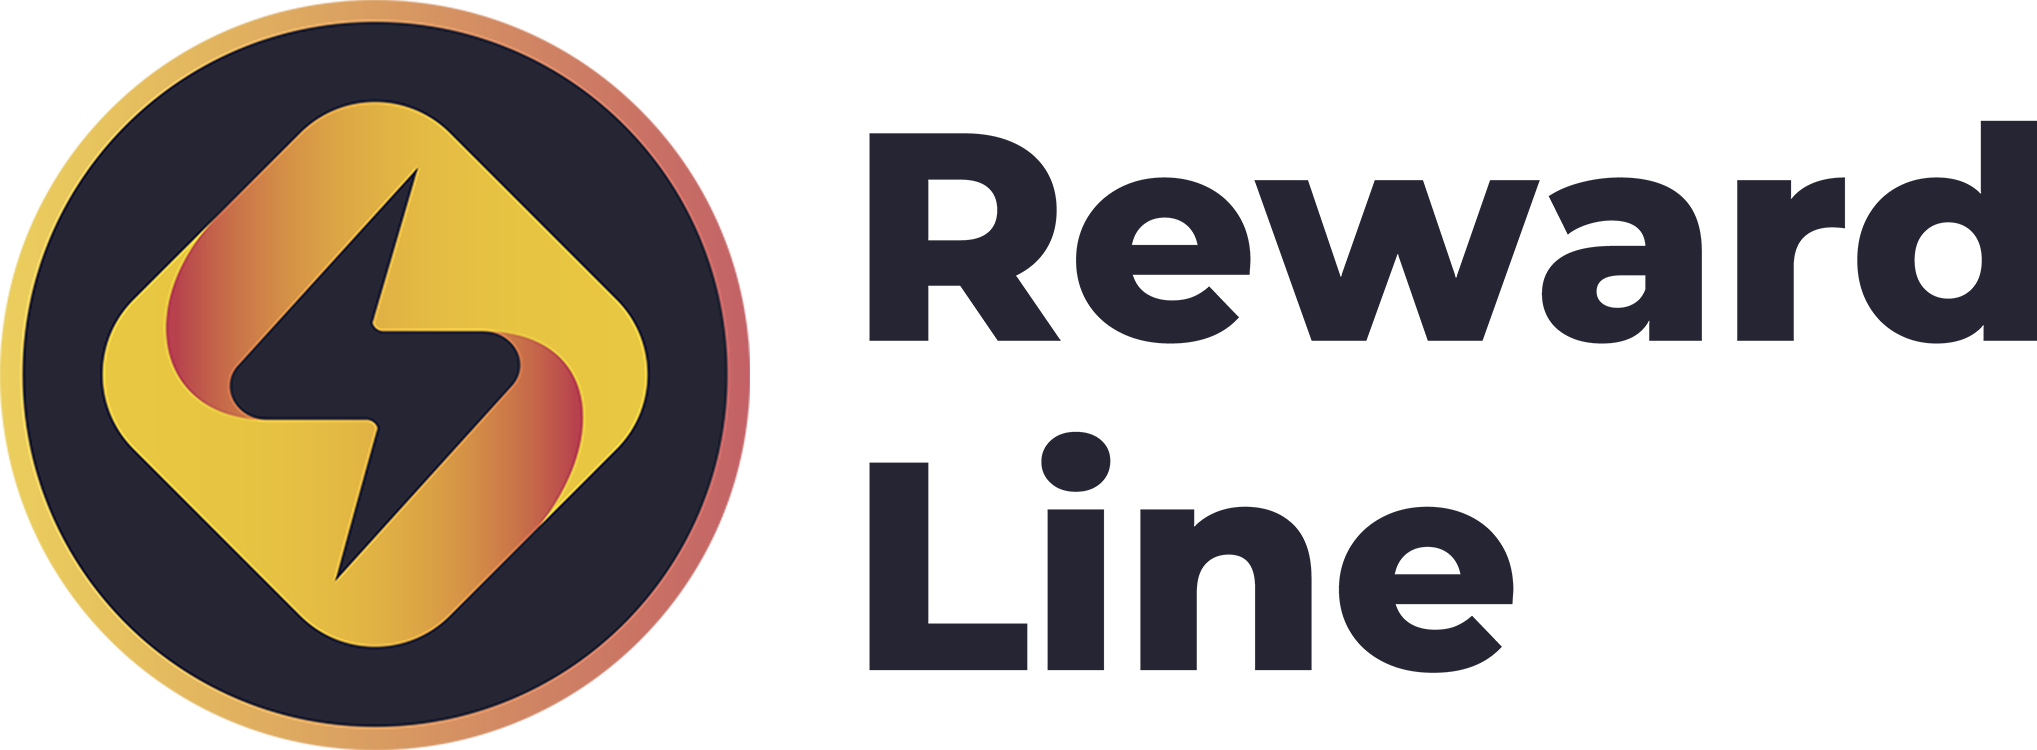 Reward Line